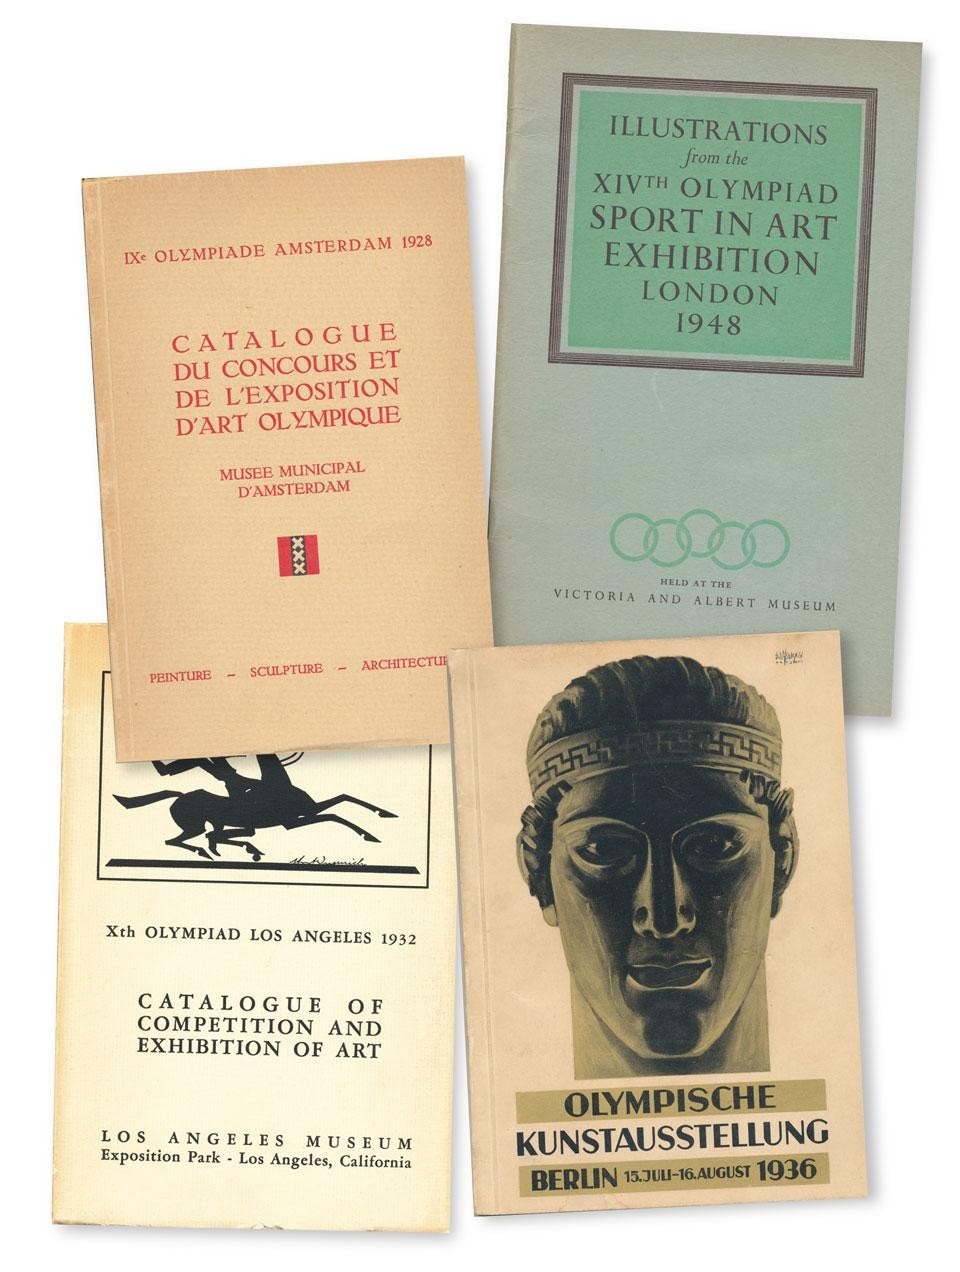 Copertine dei cataloghi dei concorsi e delle esposizioni delle Olimpiadi delle Arti dal 1928 al 1948